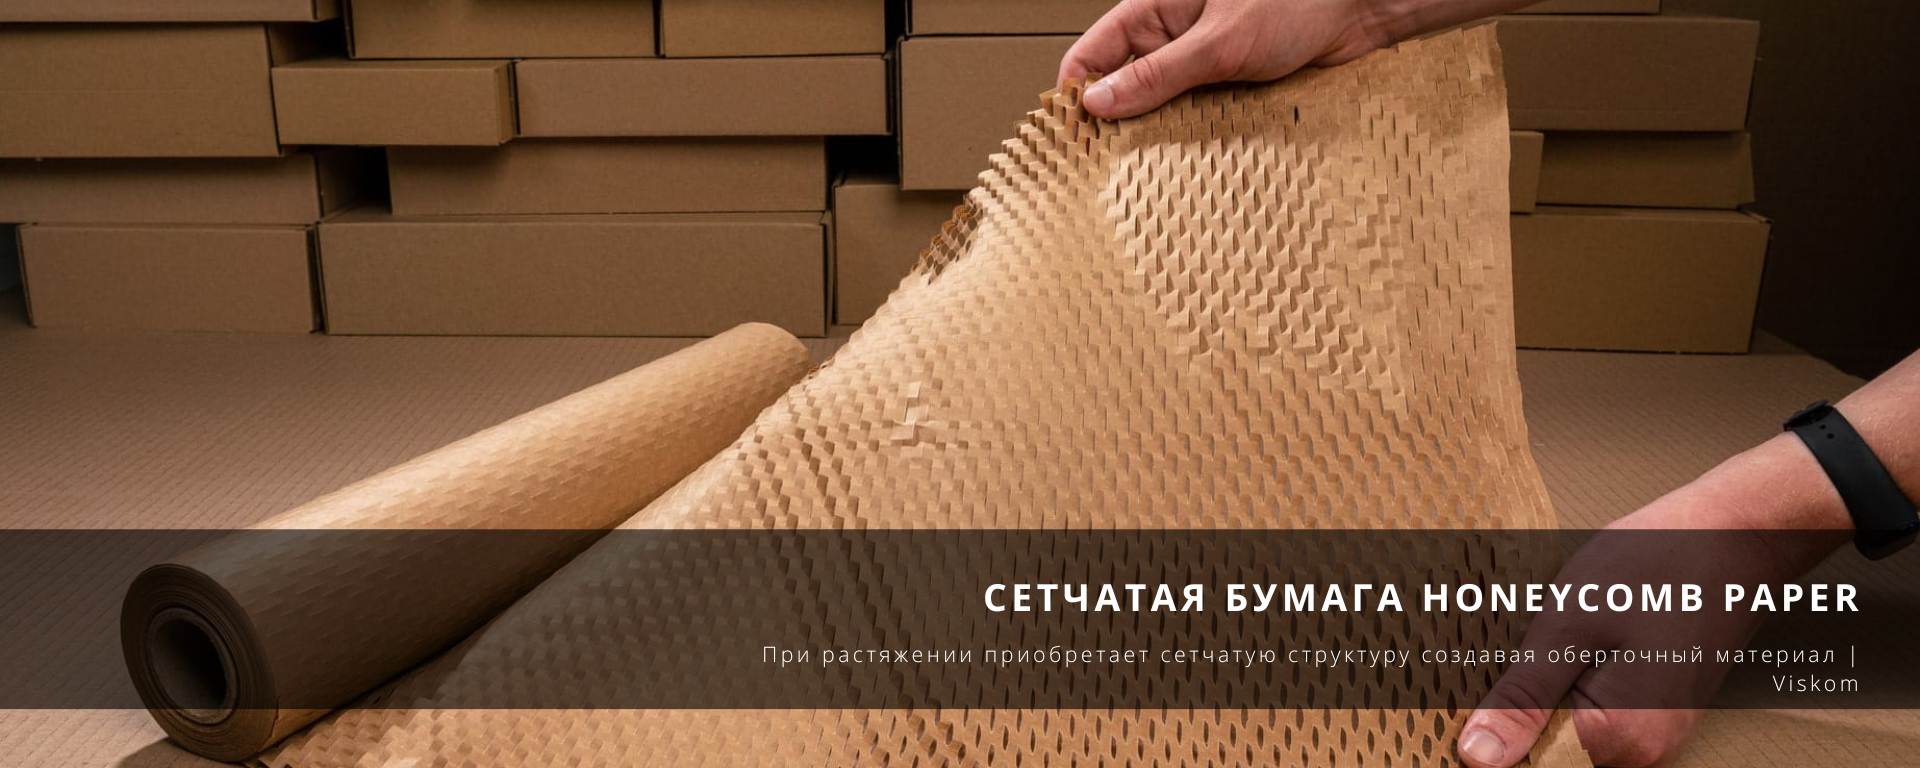 Защитные упаковочные материалы и упаковка для товара Украина